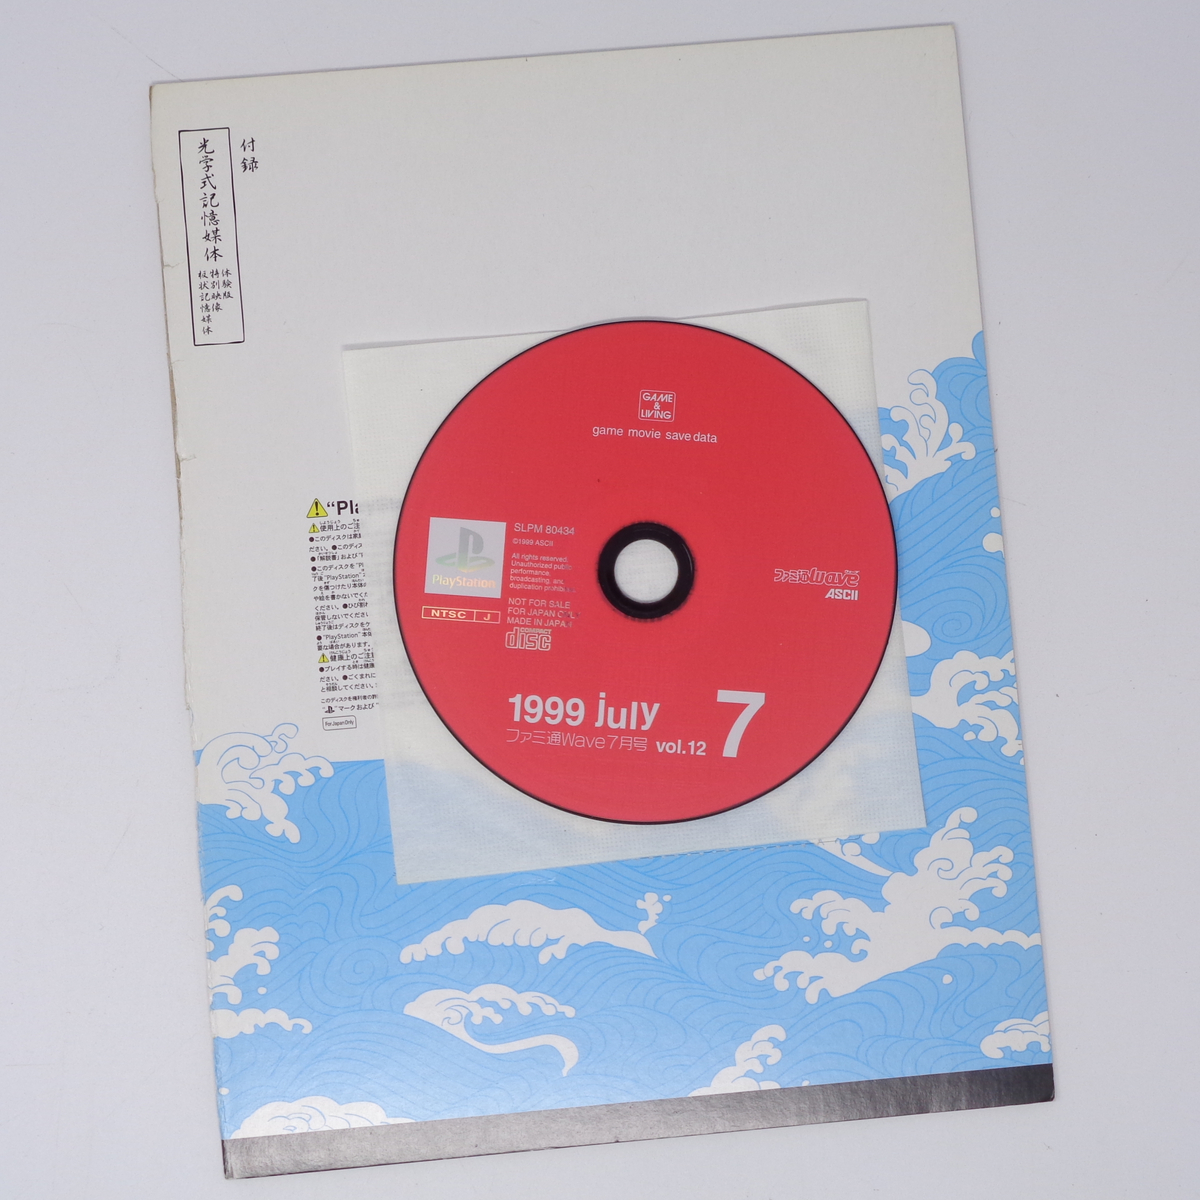 ファミ通Wave 1999年7月号 Vol.12 付録CD-ROMのみ 台紙付き/プレイステーション/ゲーム雑誌付録[Free Shipping]